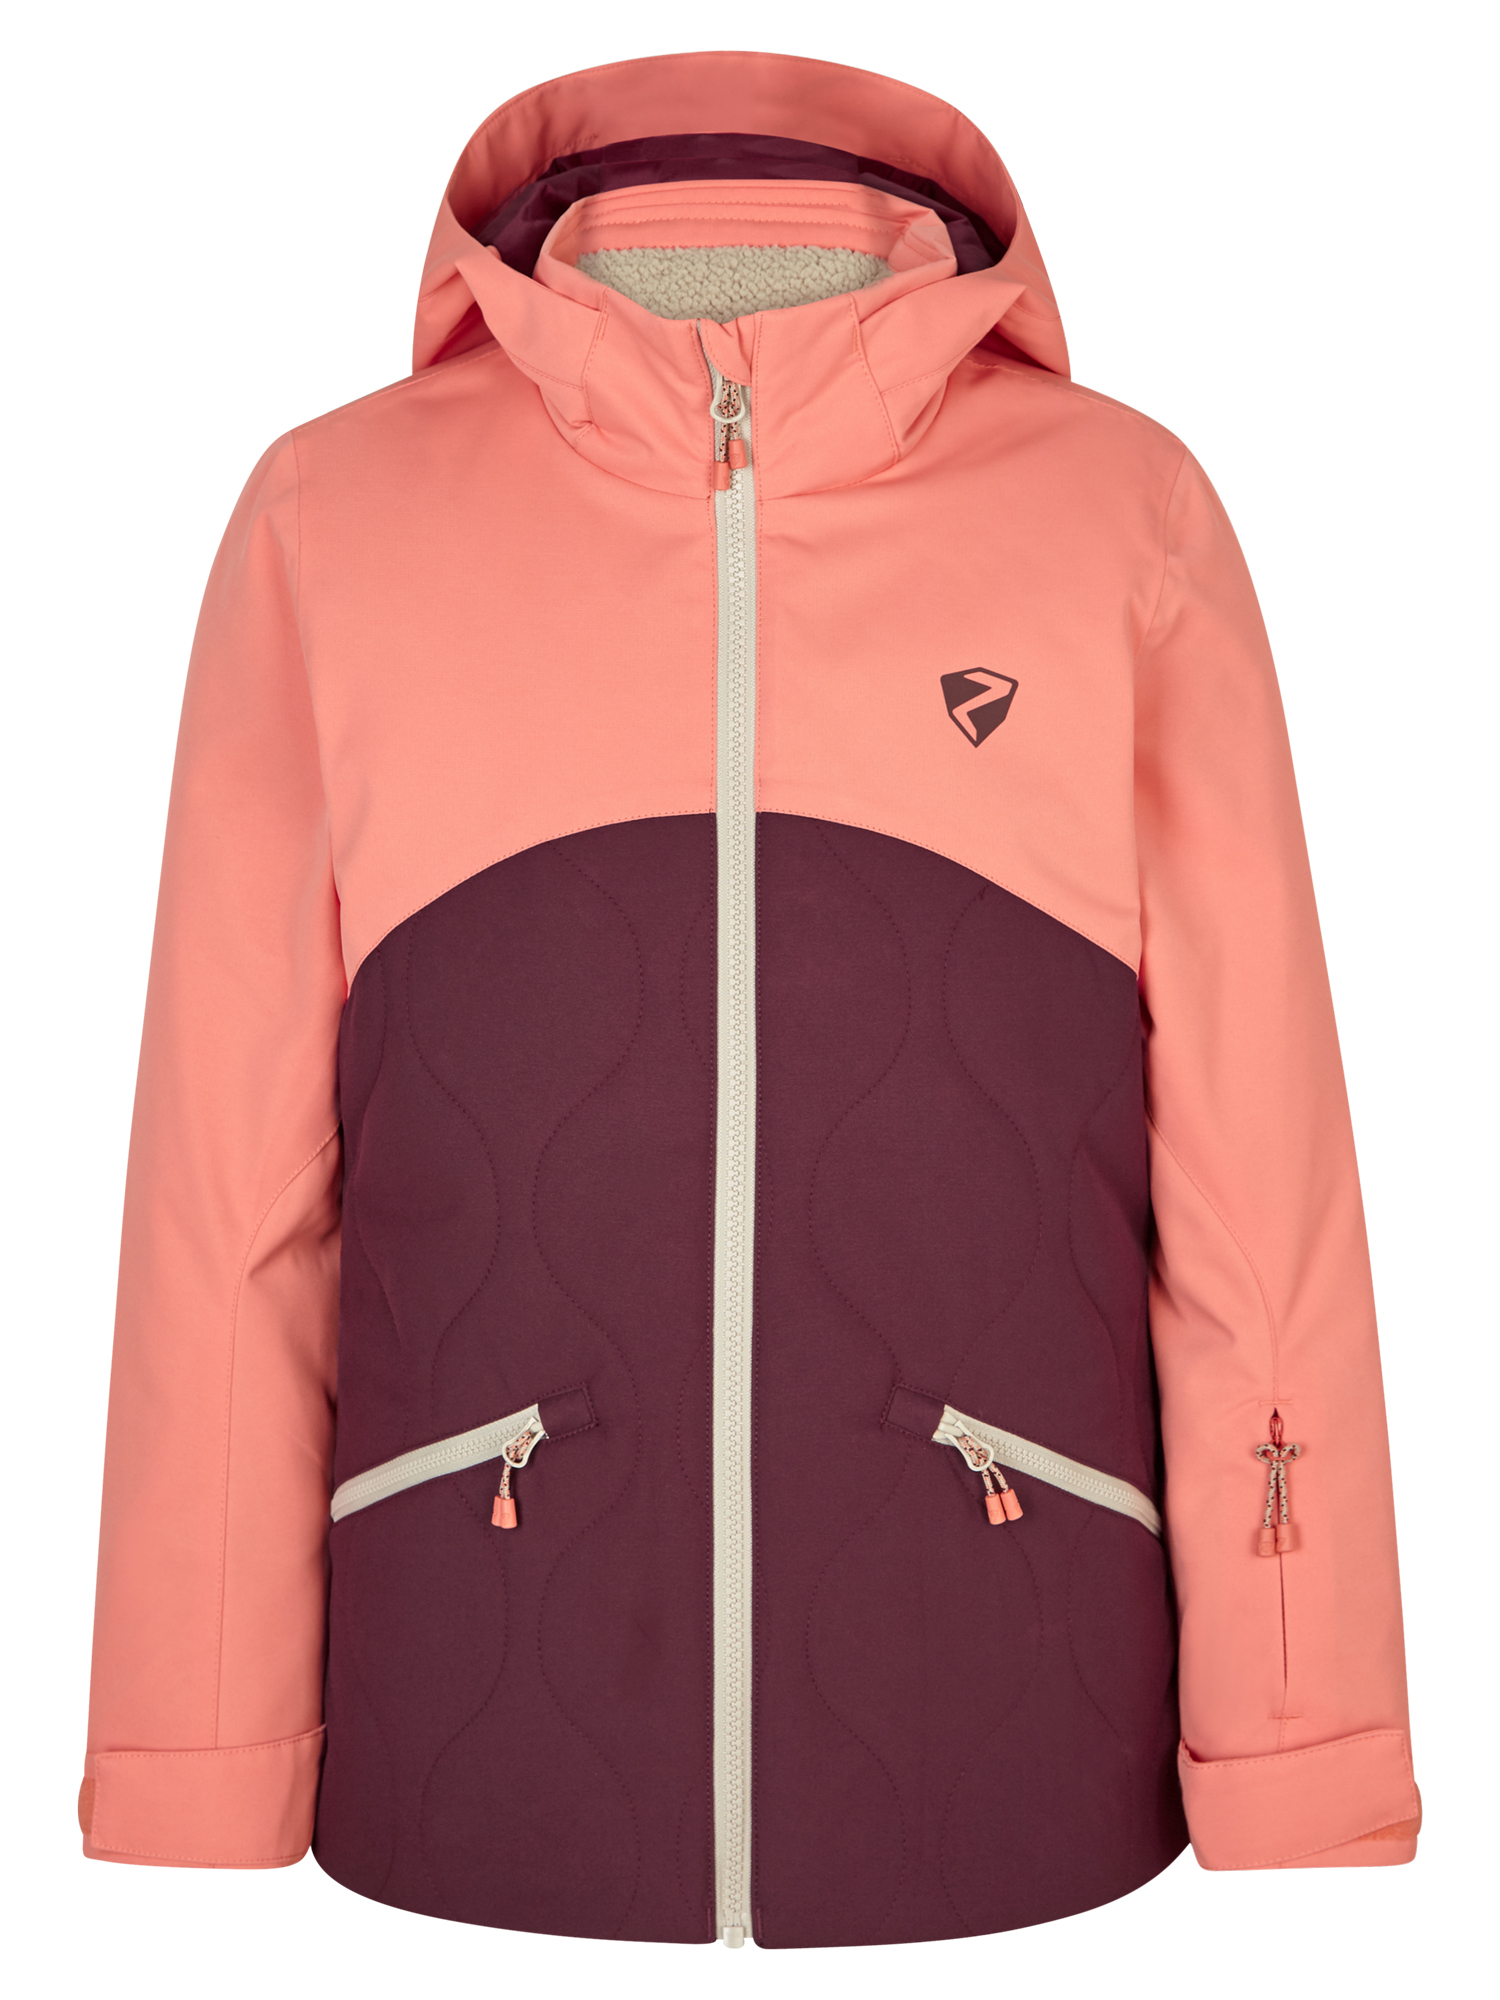 Ziener AYLA jun (jacket ski) velvet red online kaufen